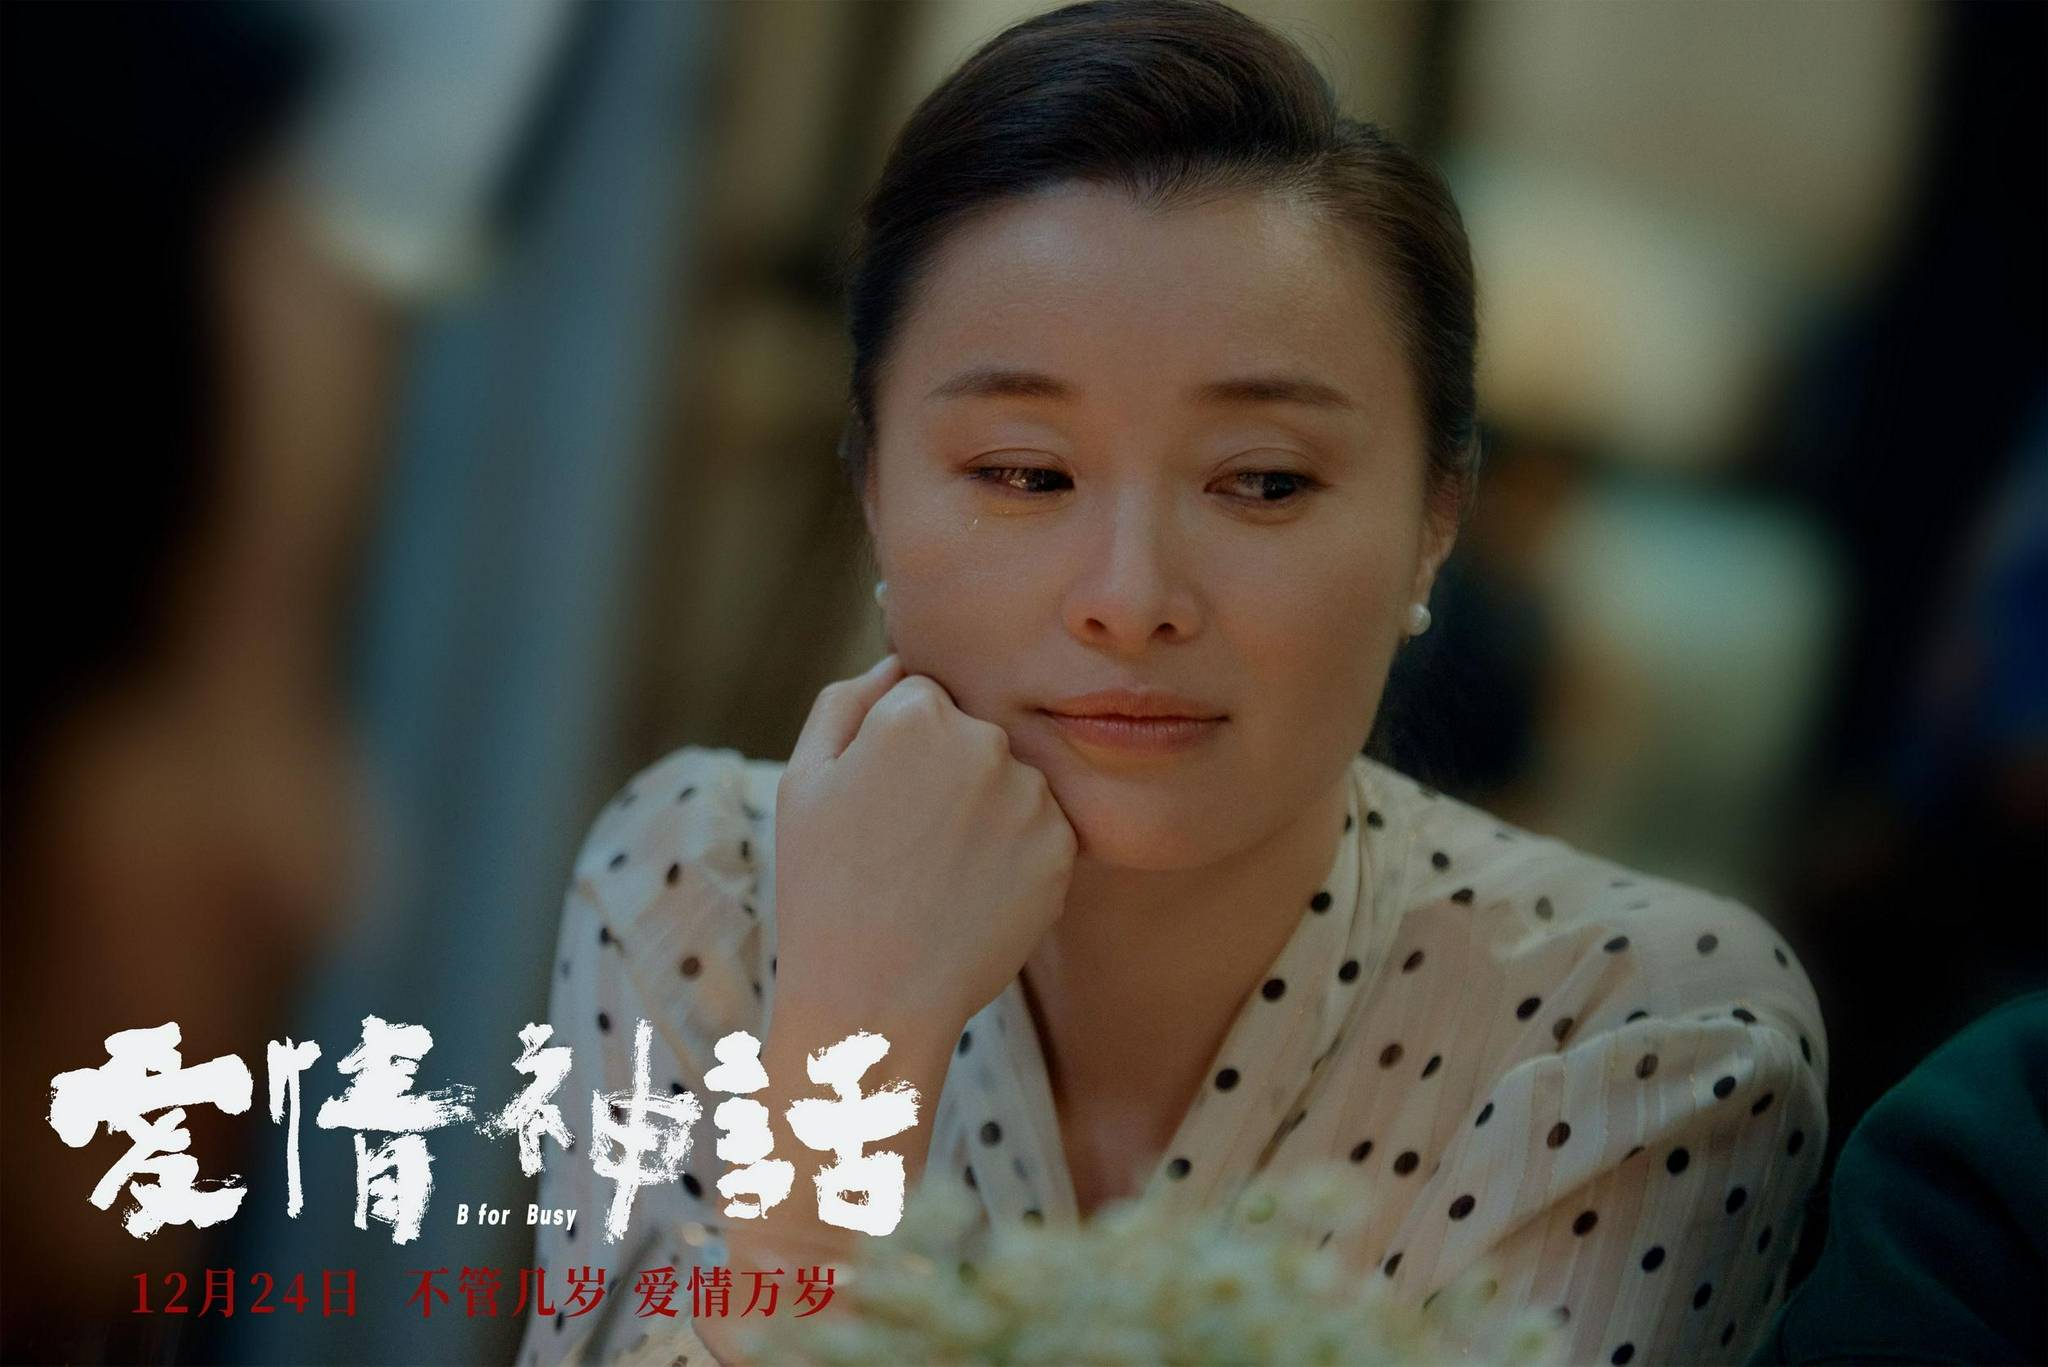 《爱情神话》发布女性特辑:马伊琍吴越倪虹洁"三个女人一台戏"